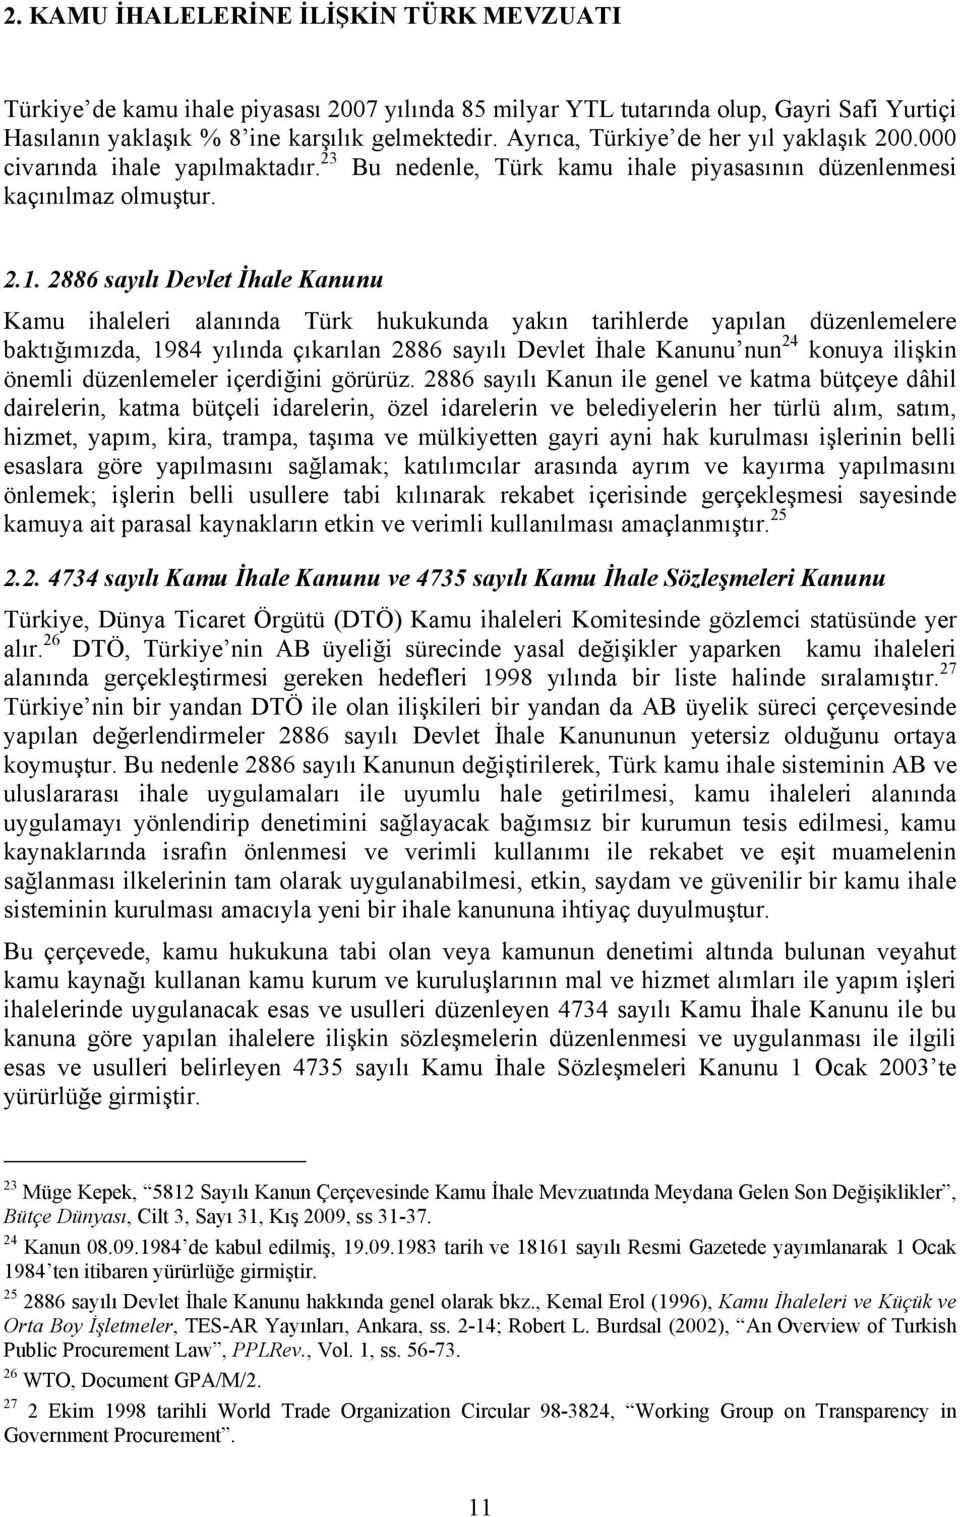 2886 sayılı Devlet İhale Kanunu Kamu ihaleleri alanında Türk hukukunda yakın tarihlerde yapılan düzenlemelere baktığımızda, 1984 yılında çıkarılan 2886 sayılı Devlet İhale Kanunu nun 24 konuya